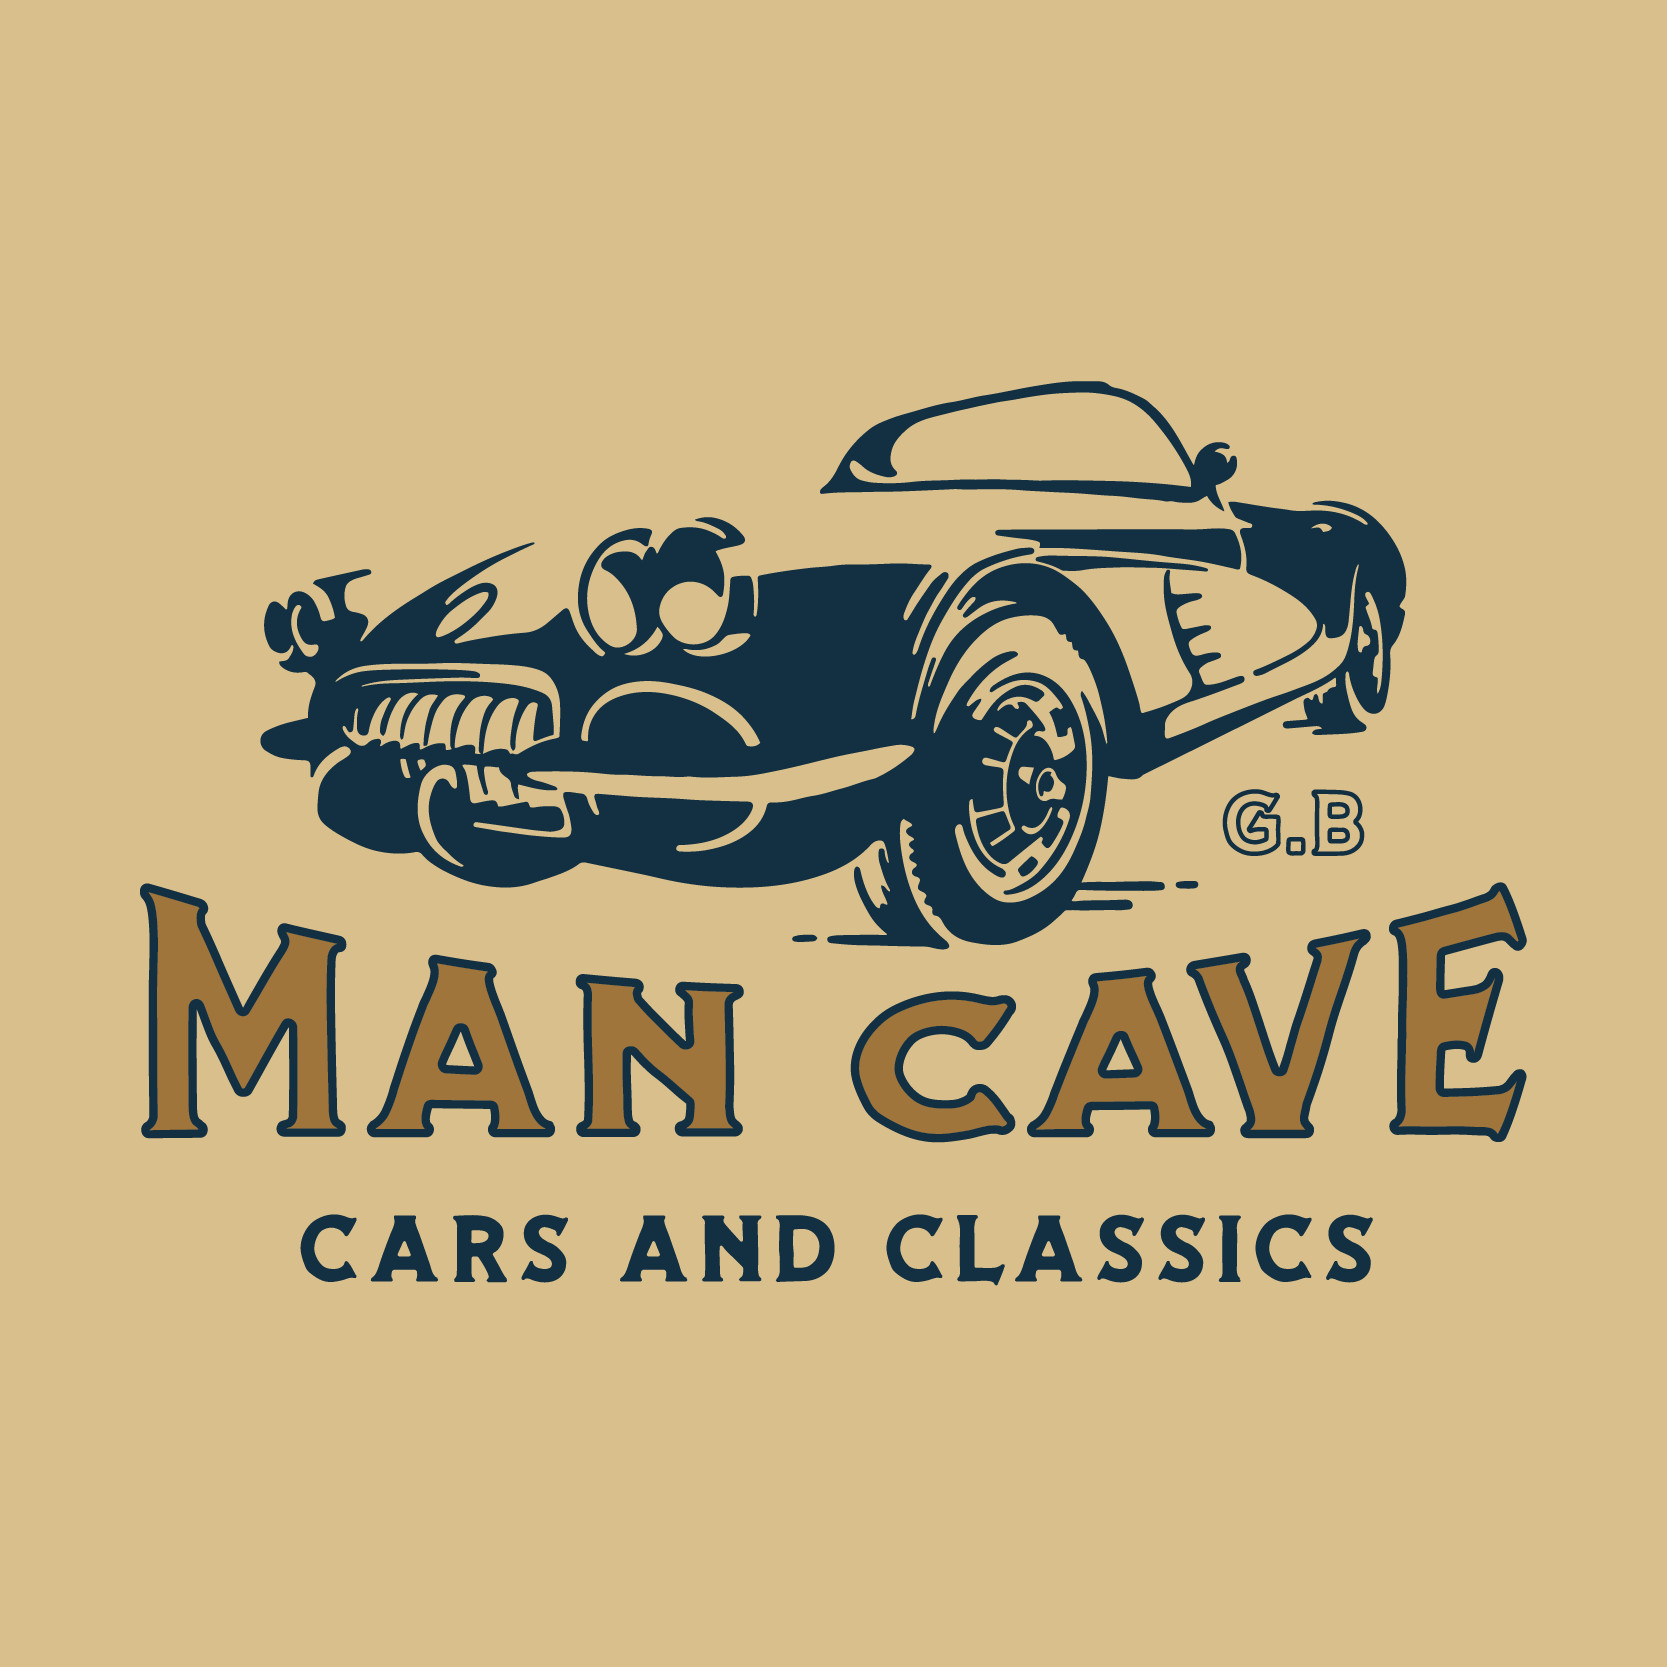 Man Cave Cars and Classics Ltd